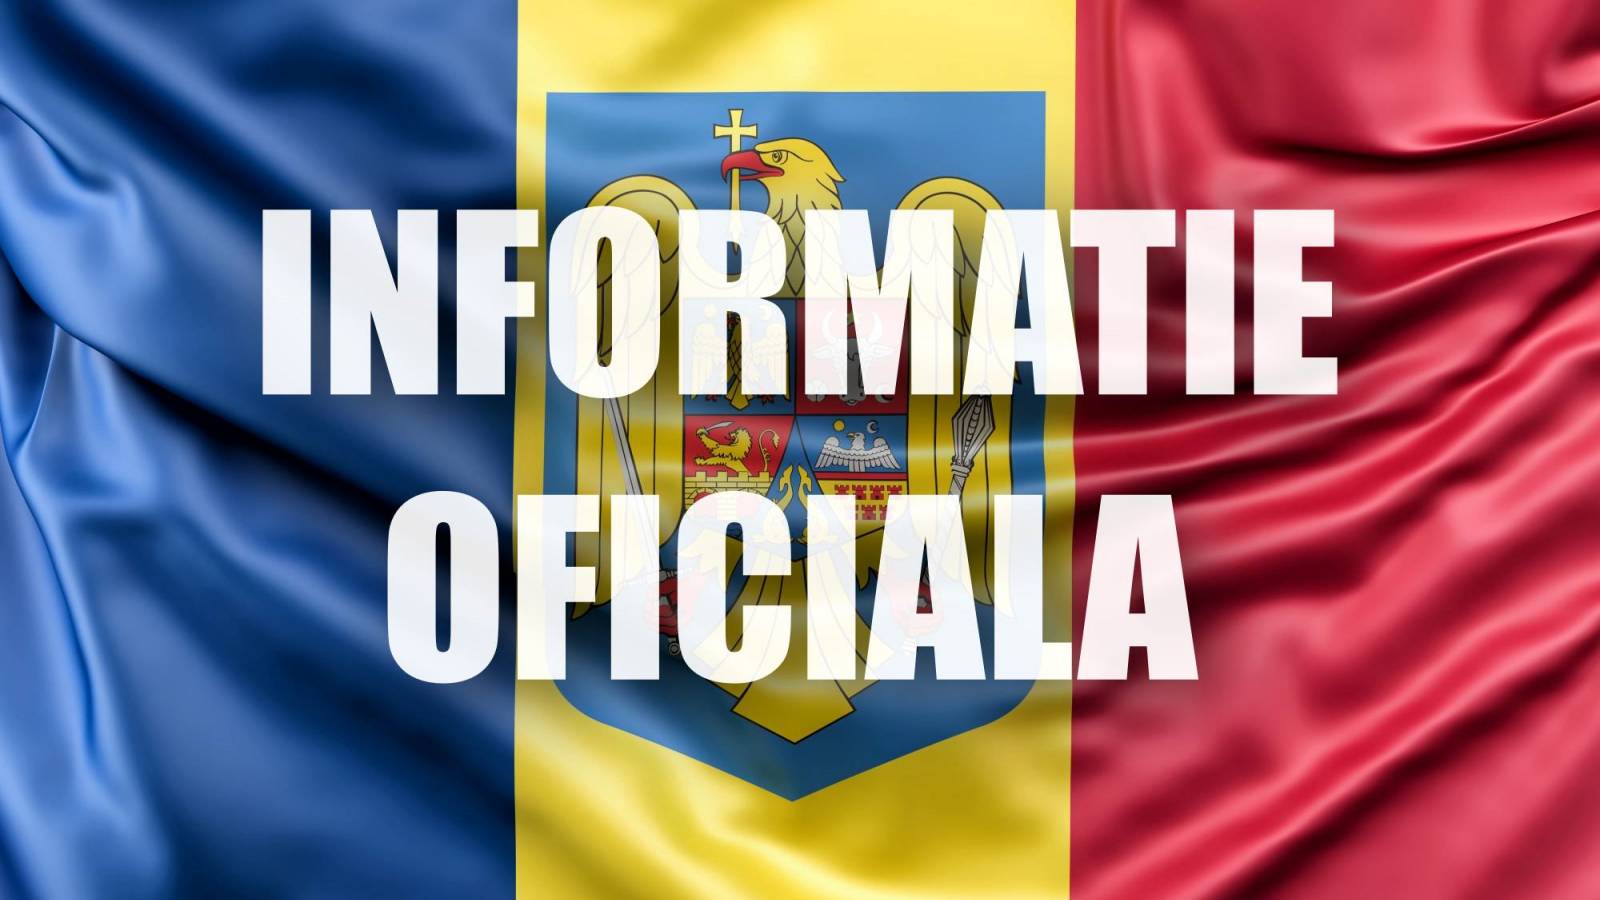 Funcionario del Ministerio de Defensa ÚLTIMO MOMENTO Anuncios sobre las acciones de los soldados rumanos